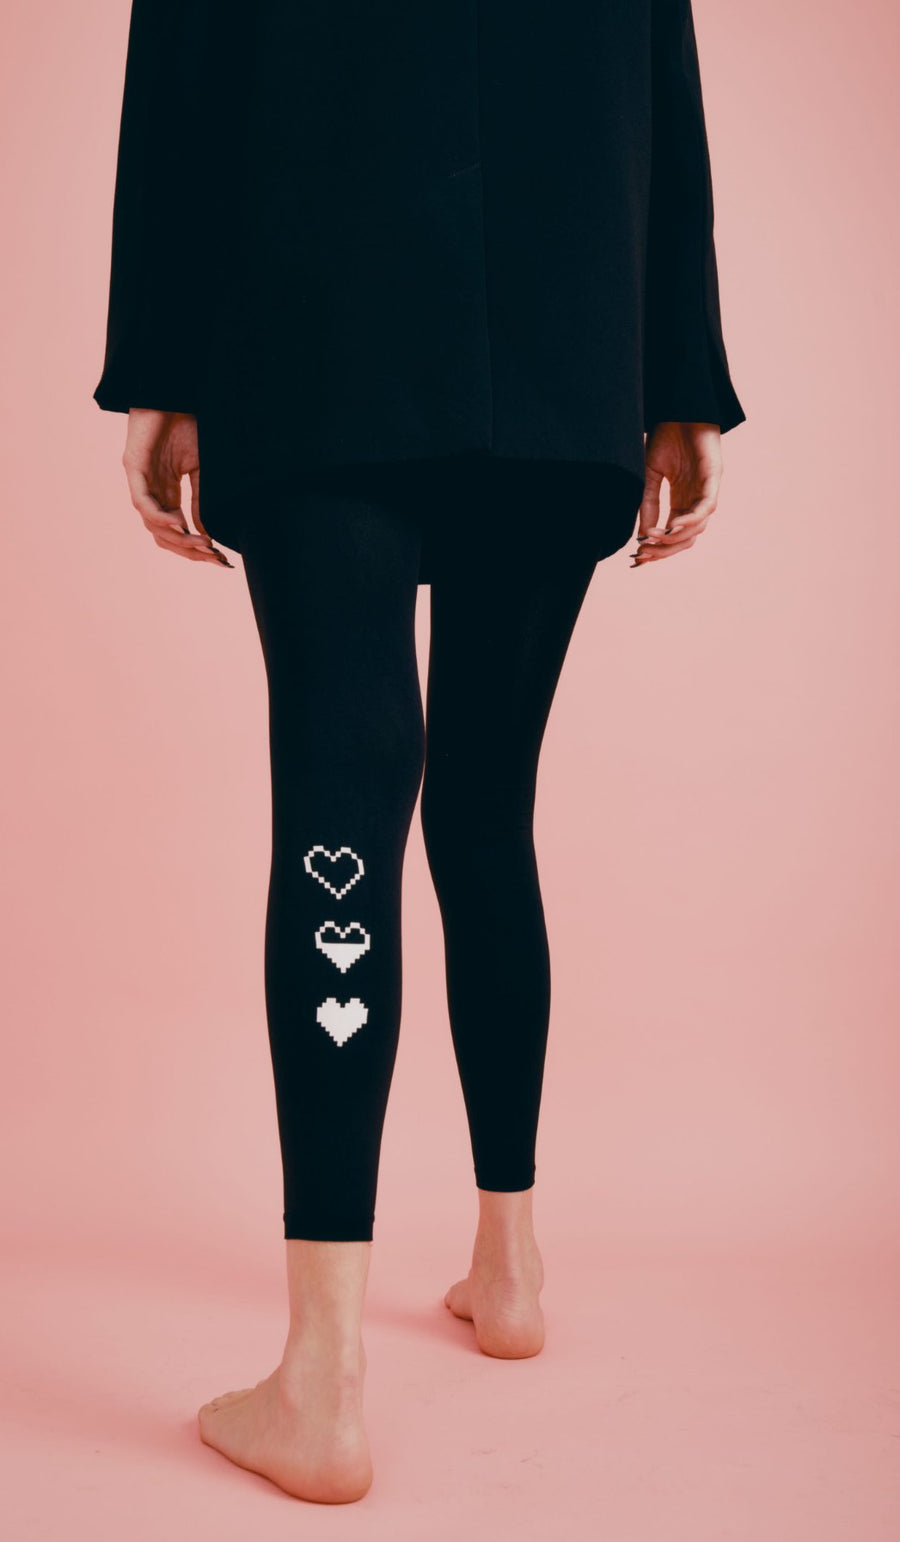 גרביון נשים ללא כף רגל - פיקסל שחור